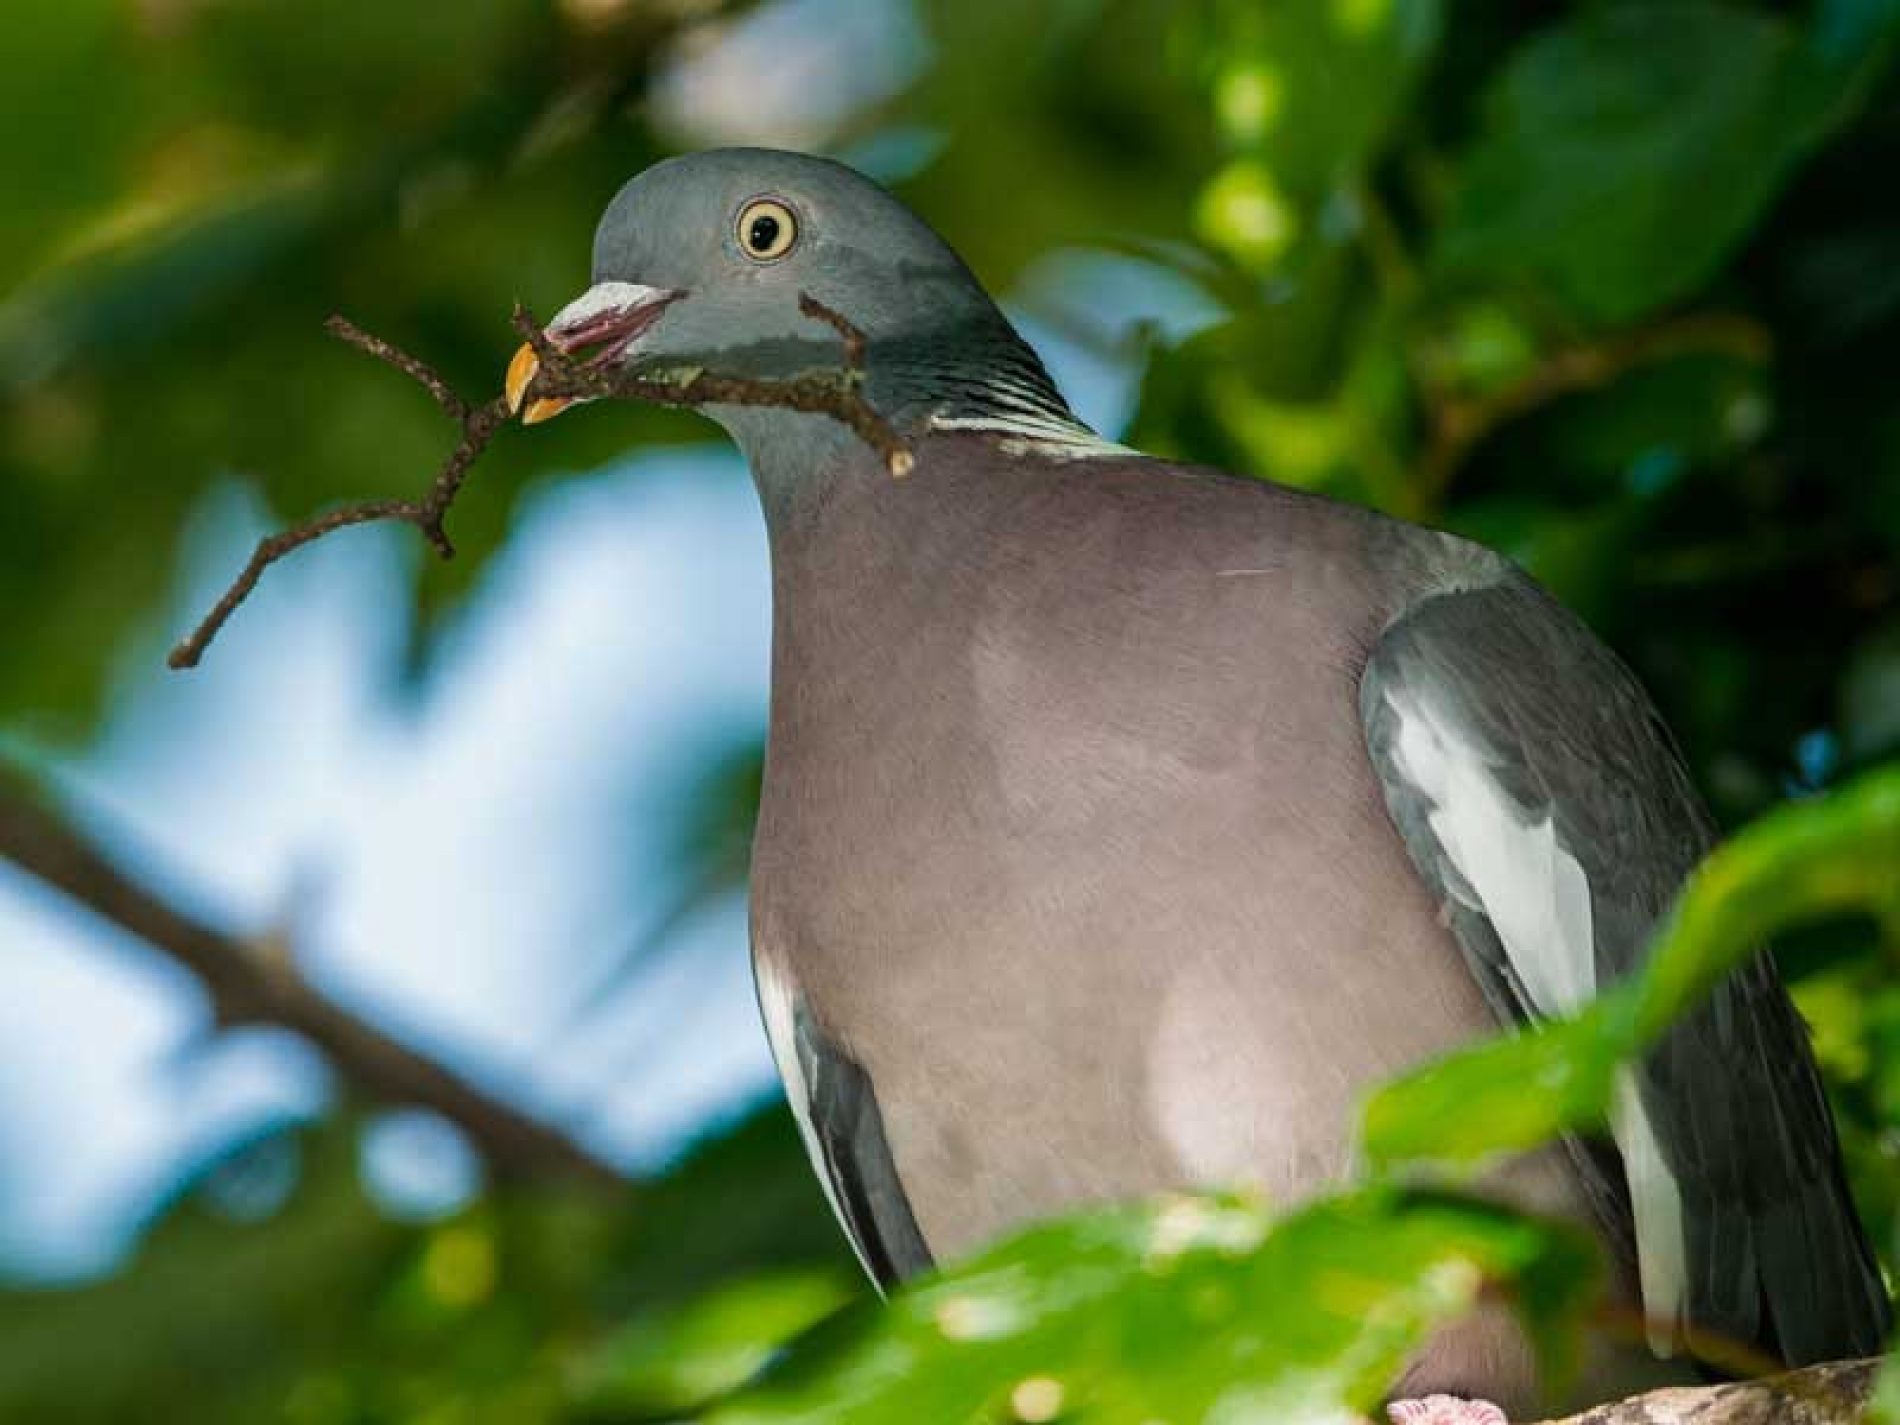 Autorizan la caza de palomas torcaces de manera «excepcional» hasta el 9 de octubre para proteger los cultivos